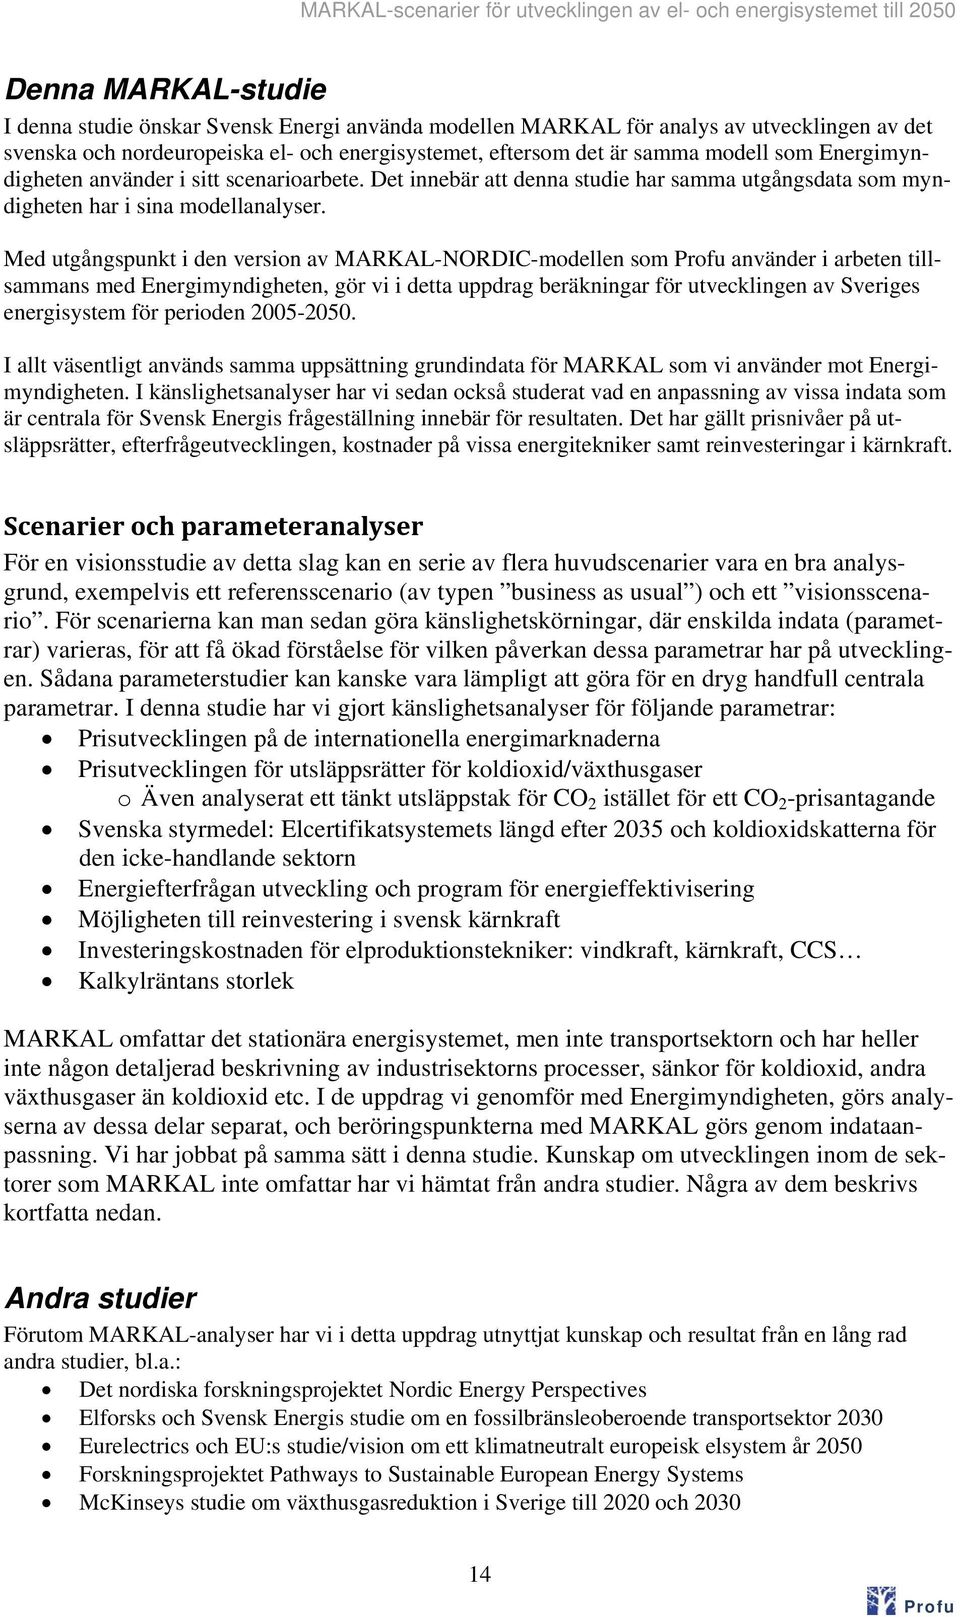 Med utgångspunkt i den version av MARKAL-NORDIC-modellen som använder i arbeten tillsammans med Energimyndigheten, gör vi i detta uppdrag beräkningar för utvecklingen av Sveriges energisystem för